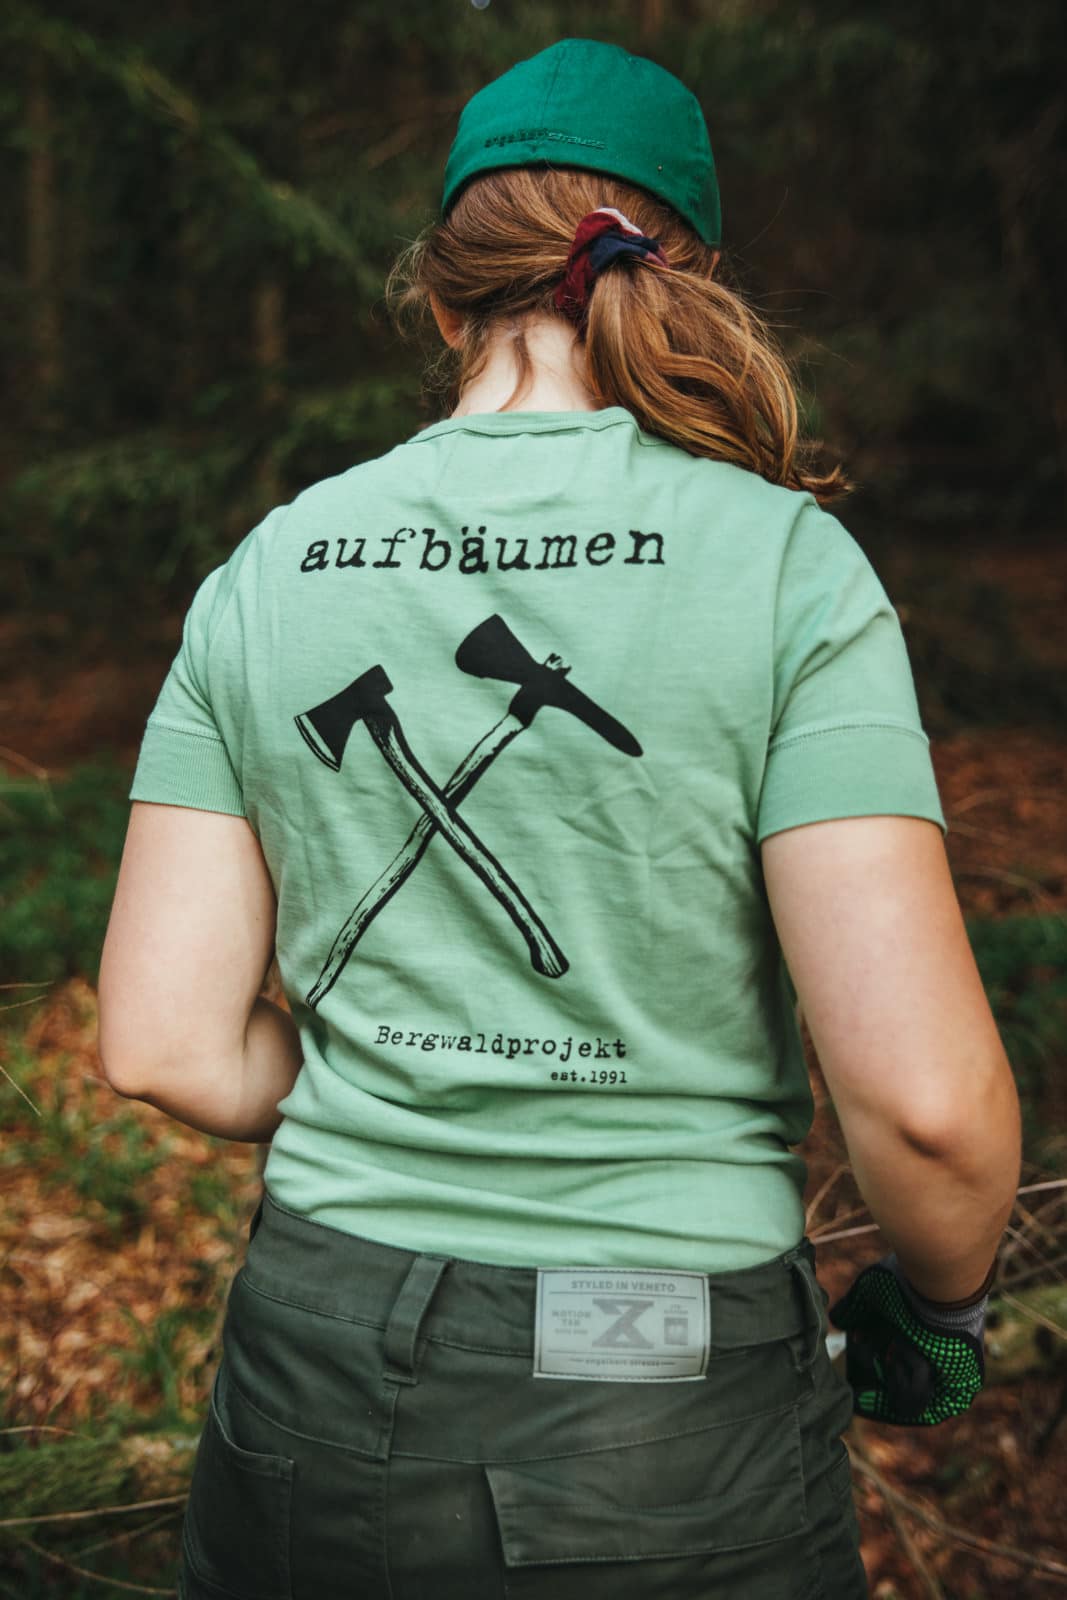 Junge Frau mit Bergwaldprojekt T-Shirt in grün mit der Aufschrift "aufbäumen" auf dem Rücken